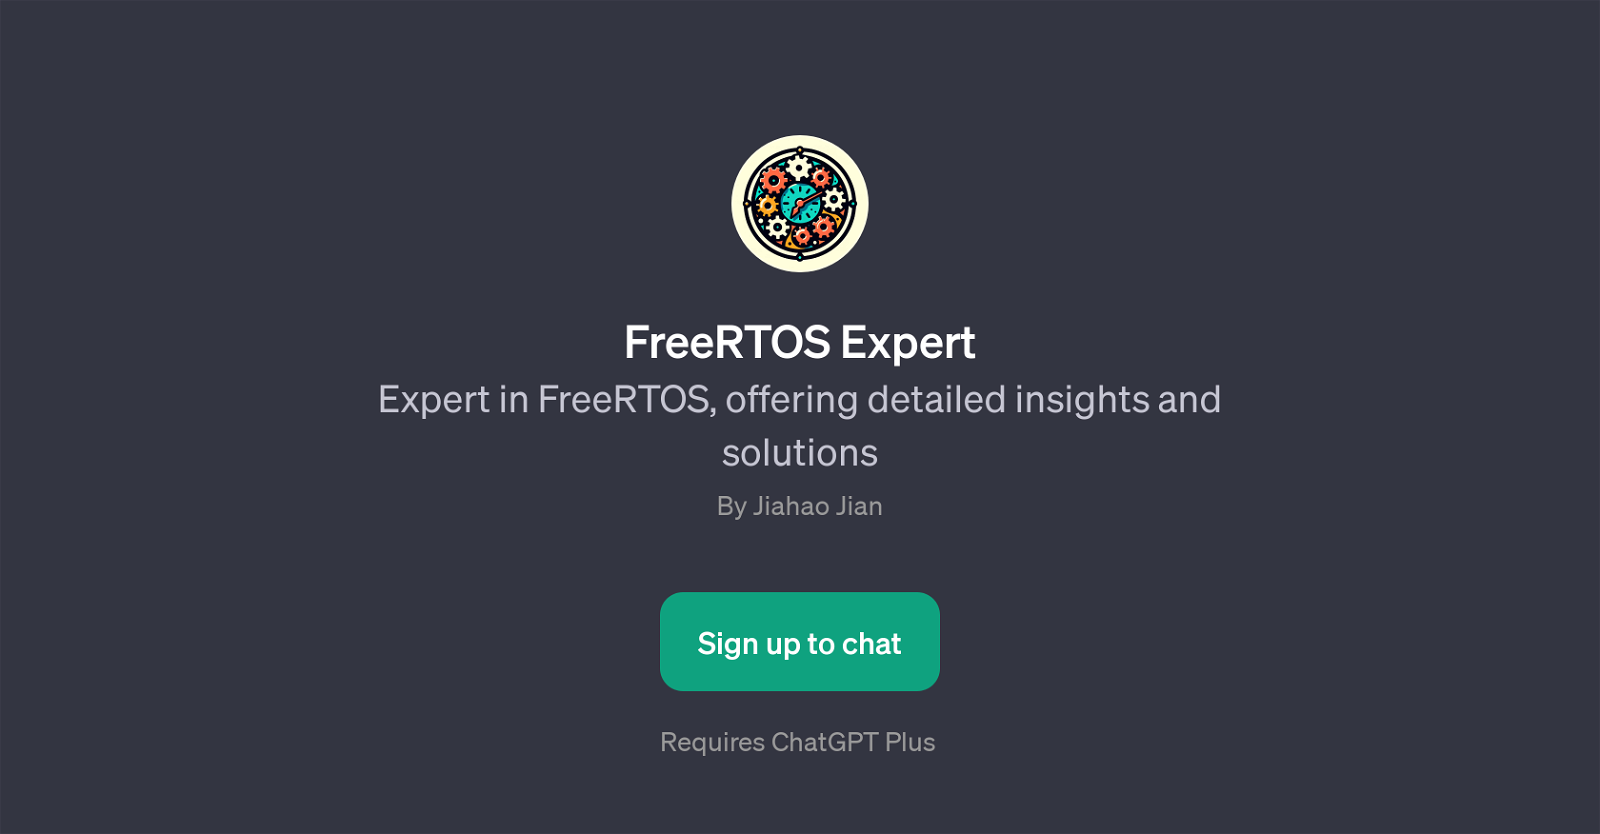 FreeRTOS Expert website